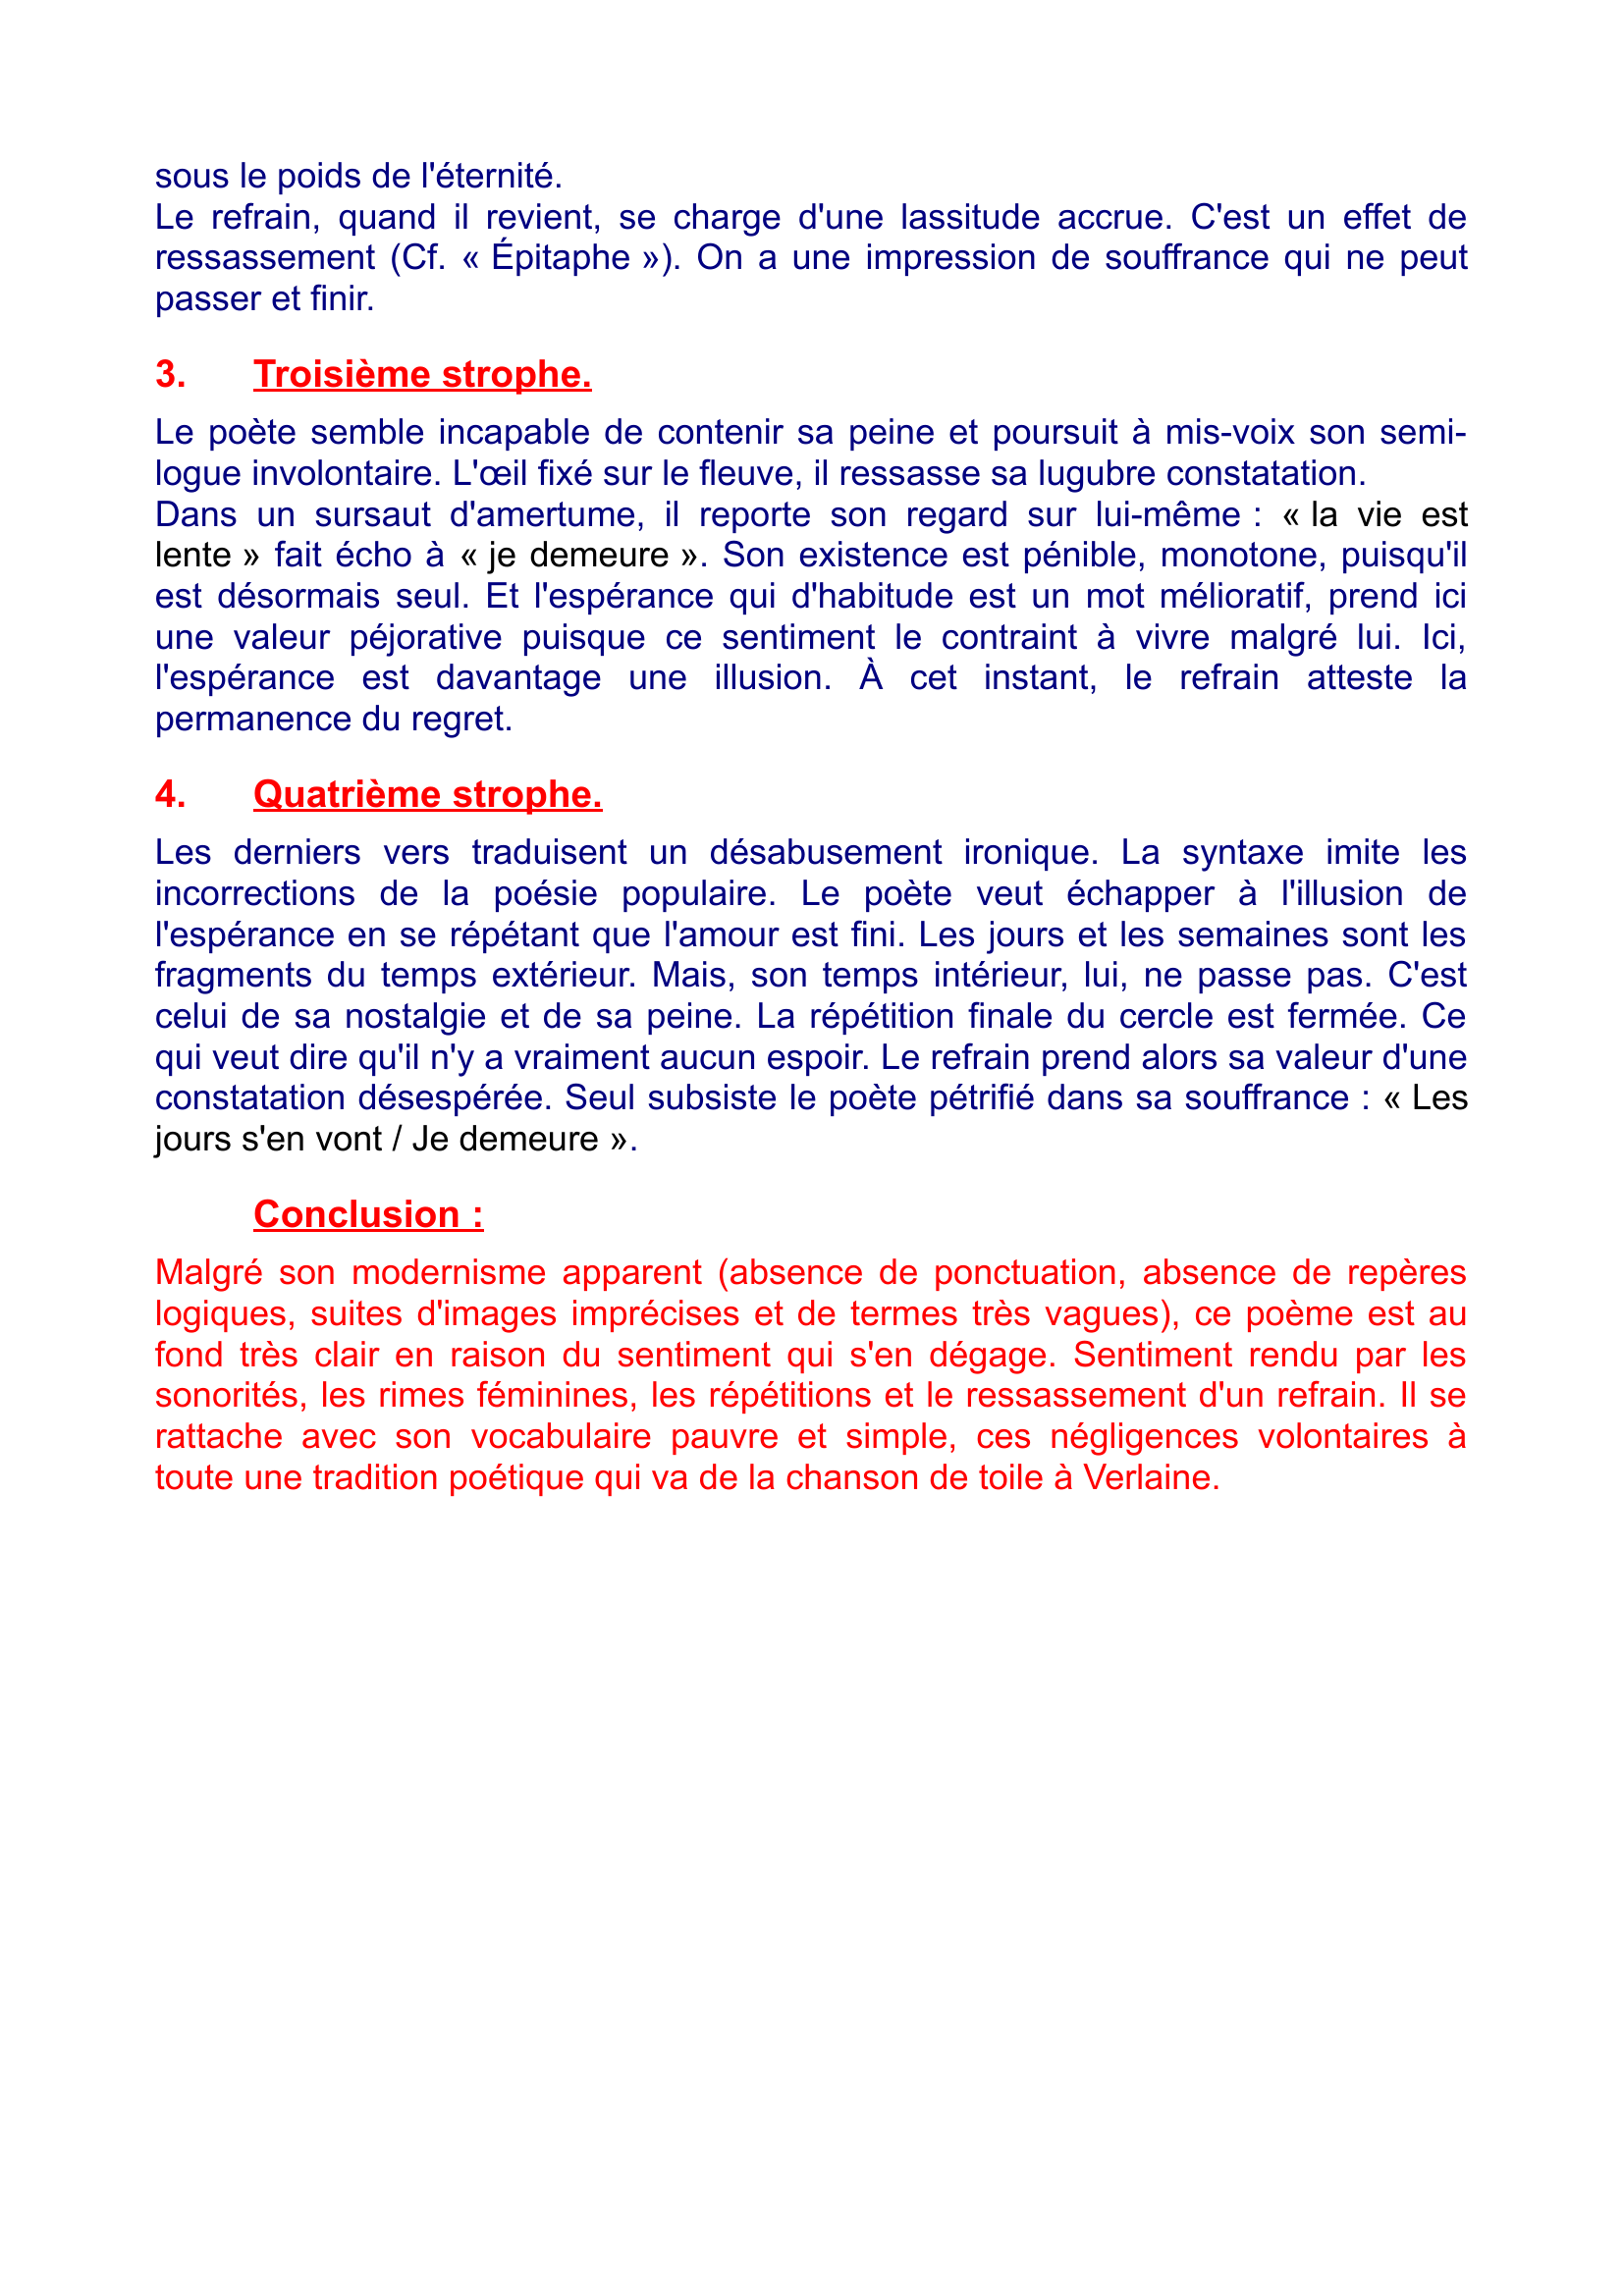 Prévisualisation du document LE PONT MIRABEAU de Guillaume Apollinaire